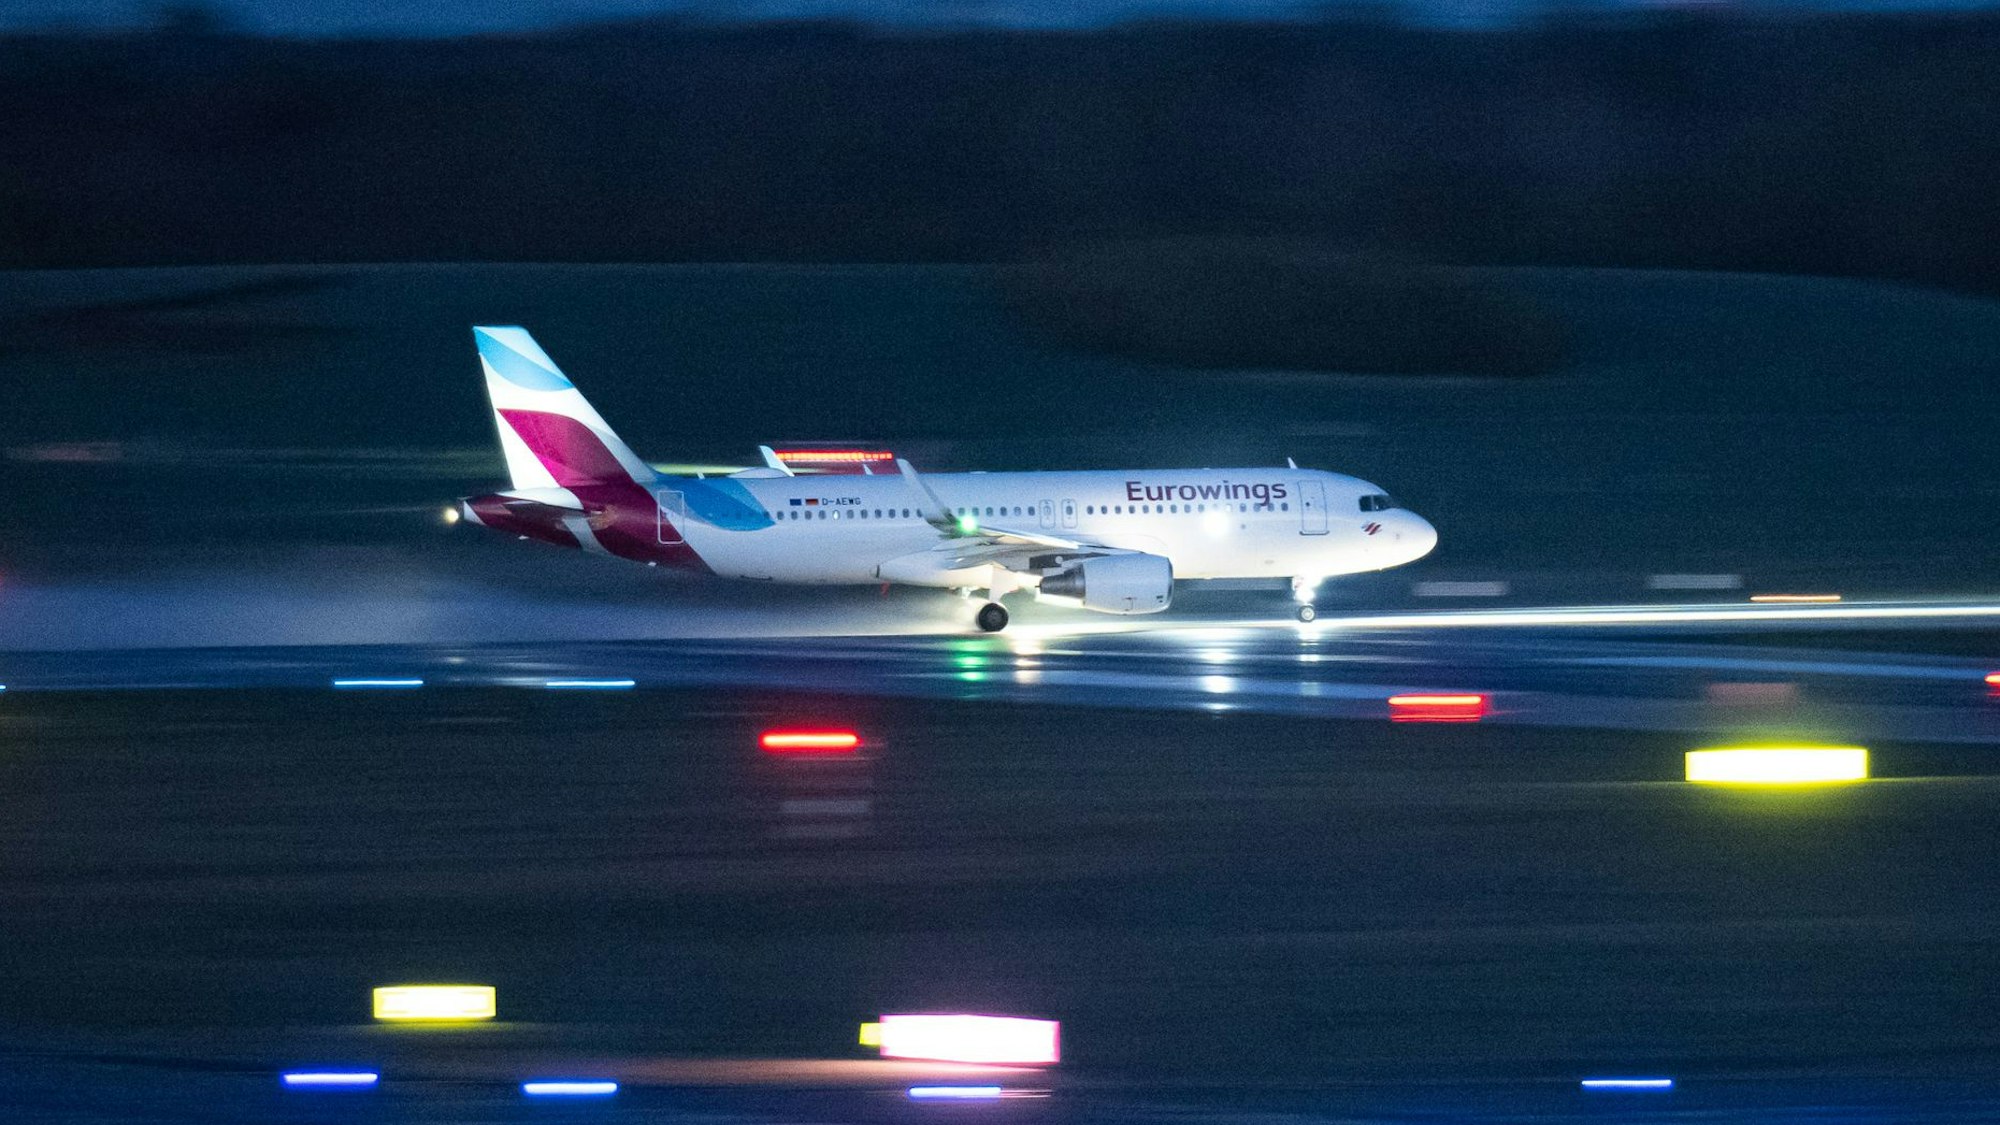 Ein Airbus A320 der deutschen Fluggesellschaft Eurowings landet auf einer beleuchteten Landebahn. Mehrere Warnleuchten sind aktiv. (Symbolbild)